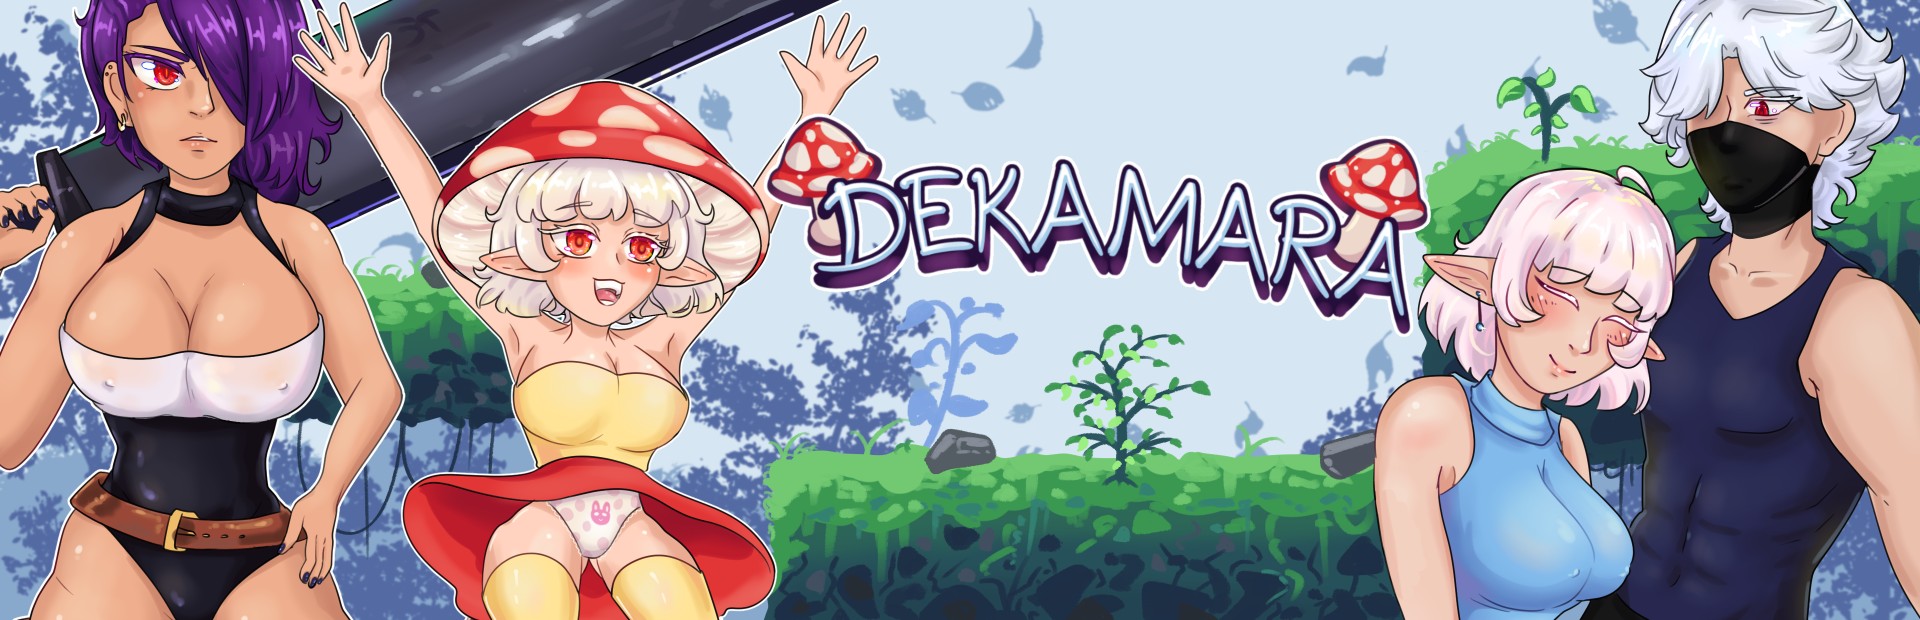 Dekamara Apk Adult Game Android Download (9)